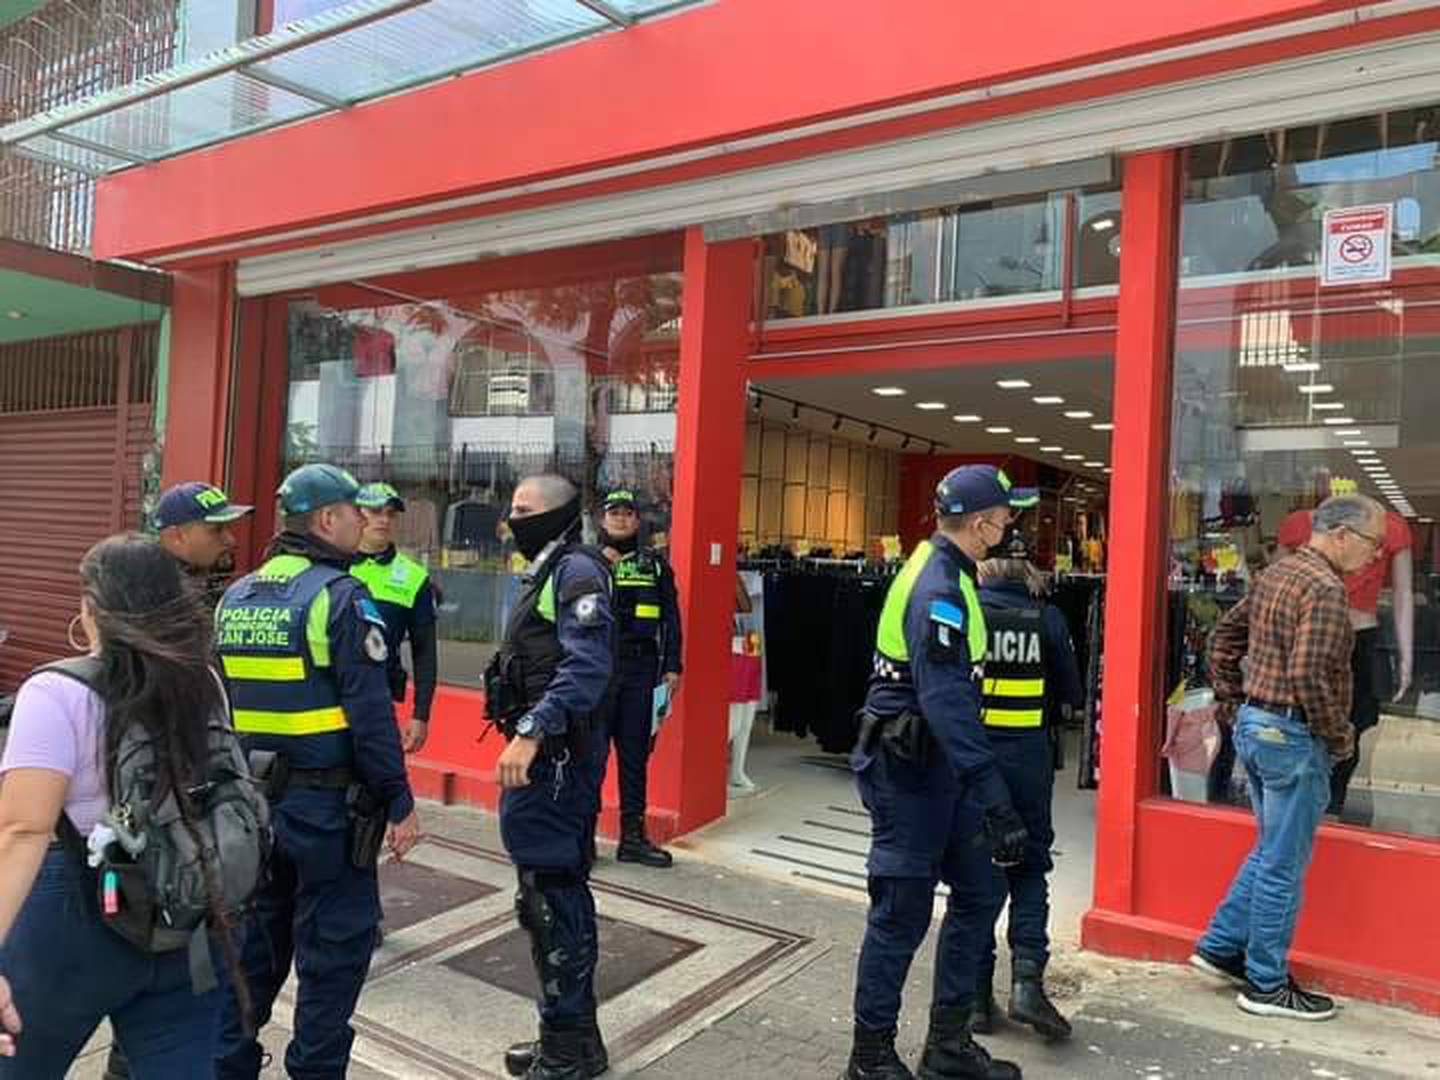 Intervención policial a la cadena de tiendas SYR. Foto cortesía.